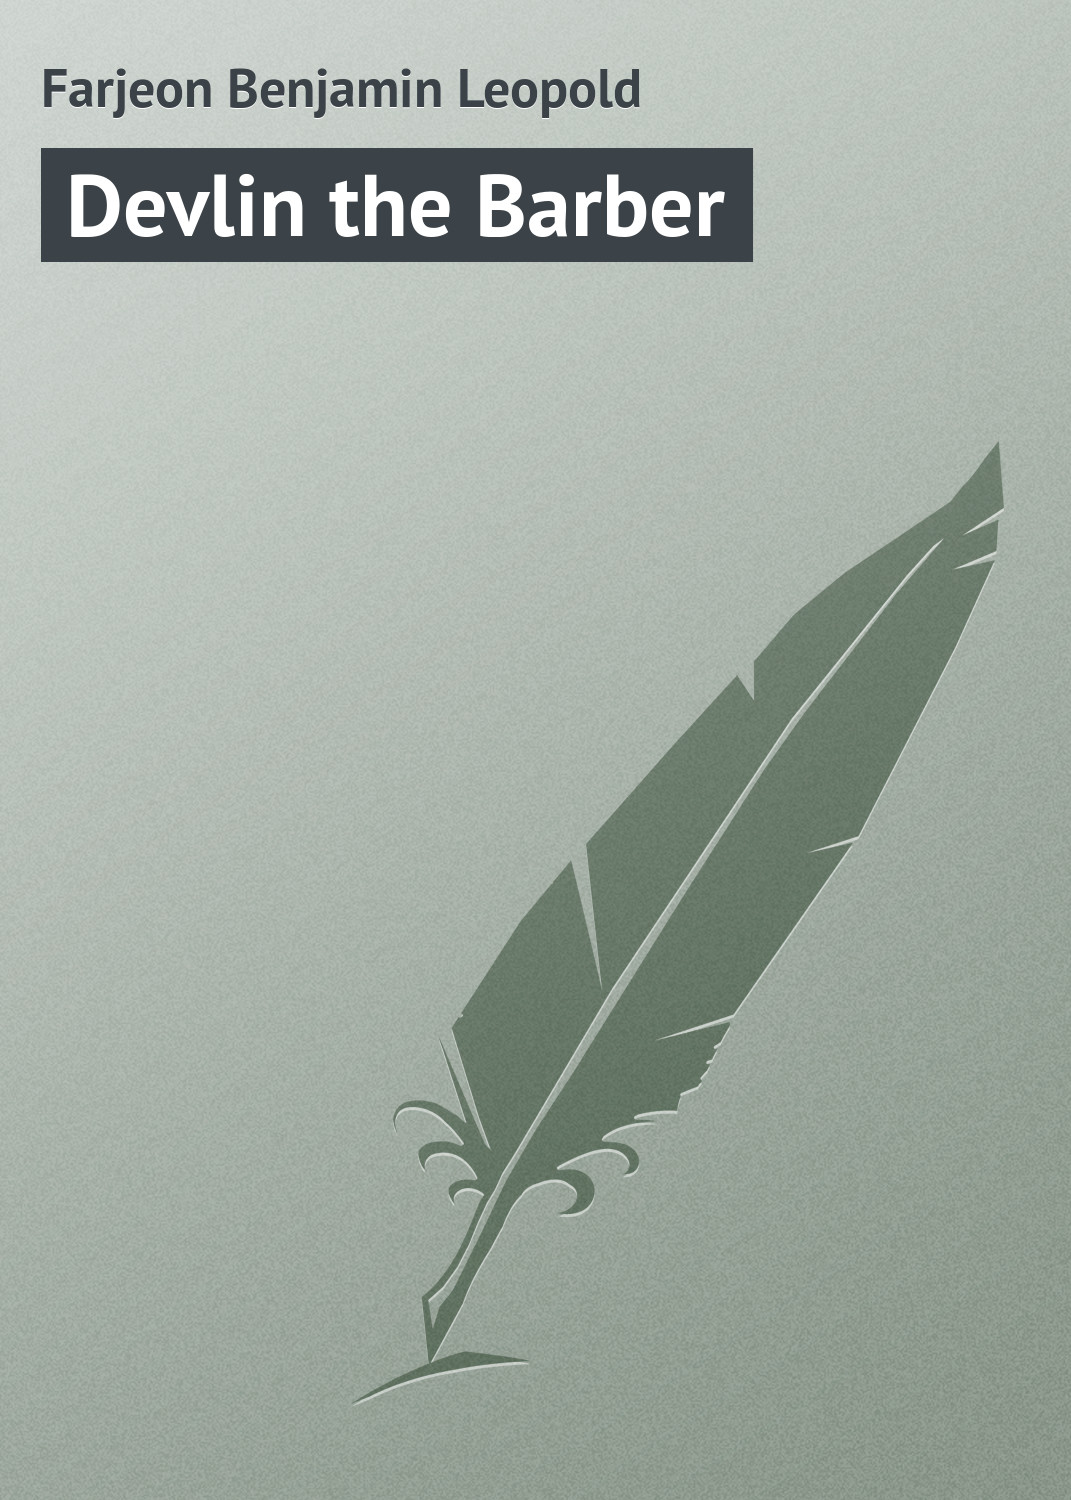 Книга Devlin the Barber из серии , созданная Benjamin Farjeon, может относится к жанру Зарубежная классика. Стоимость электронной книги Devlin the Barber с идентификатором 23157587 составляет 5.99 руб.